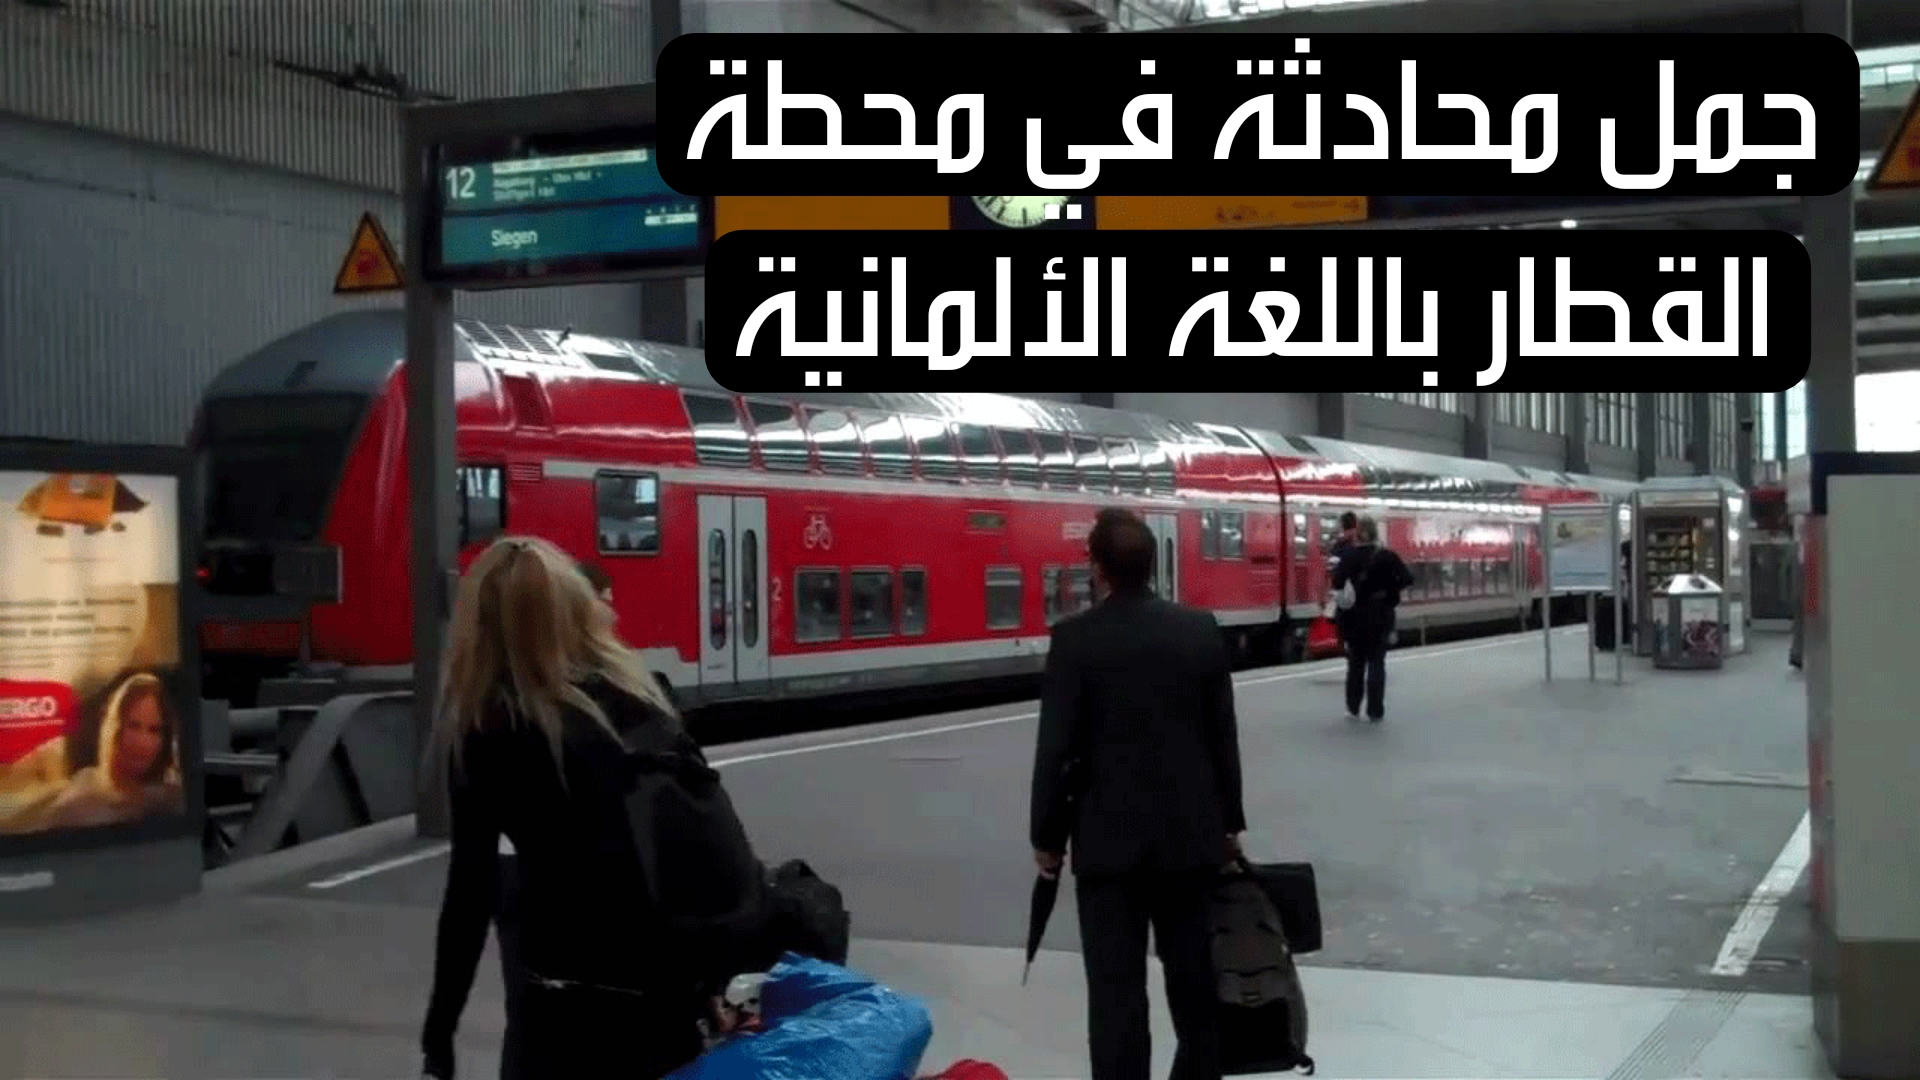 جمل محادثة في محطة القطار باللغة الألمانية